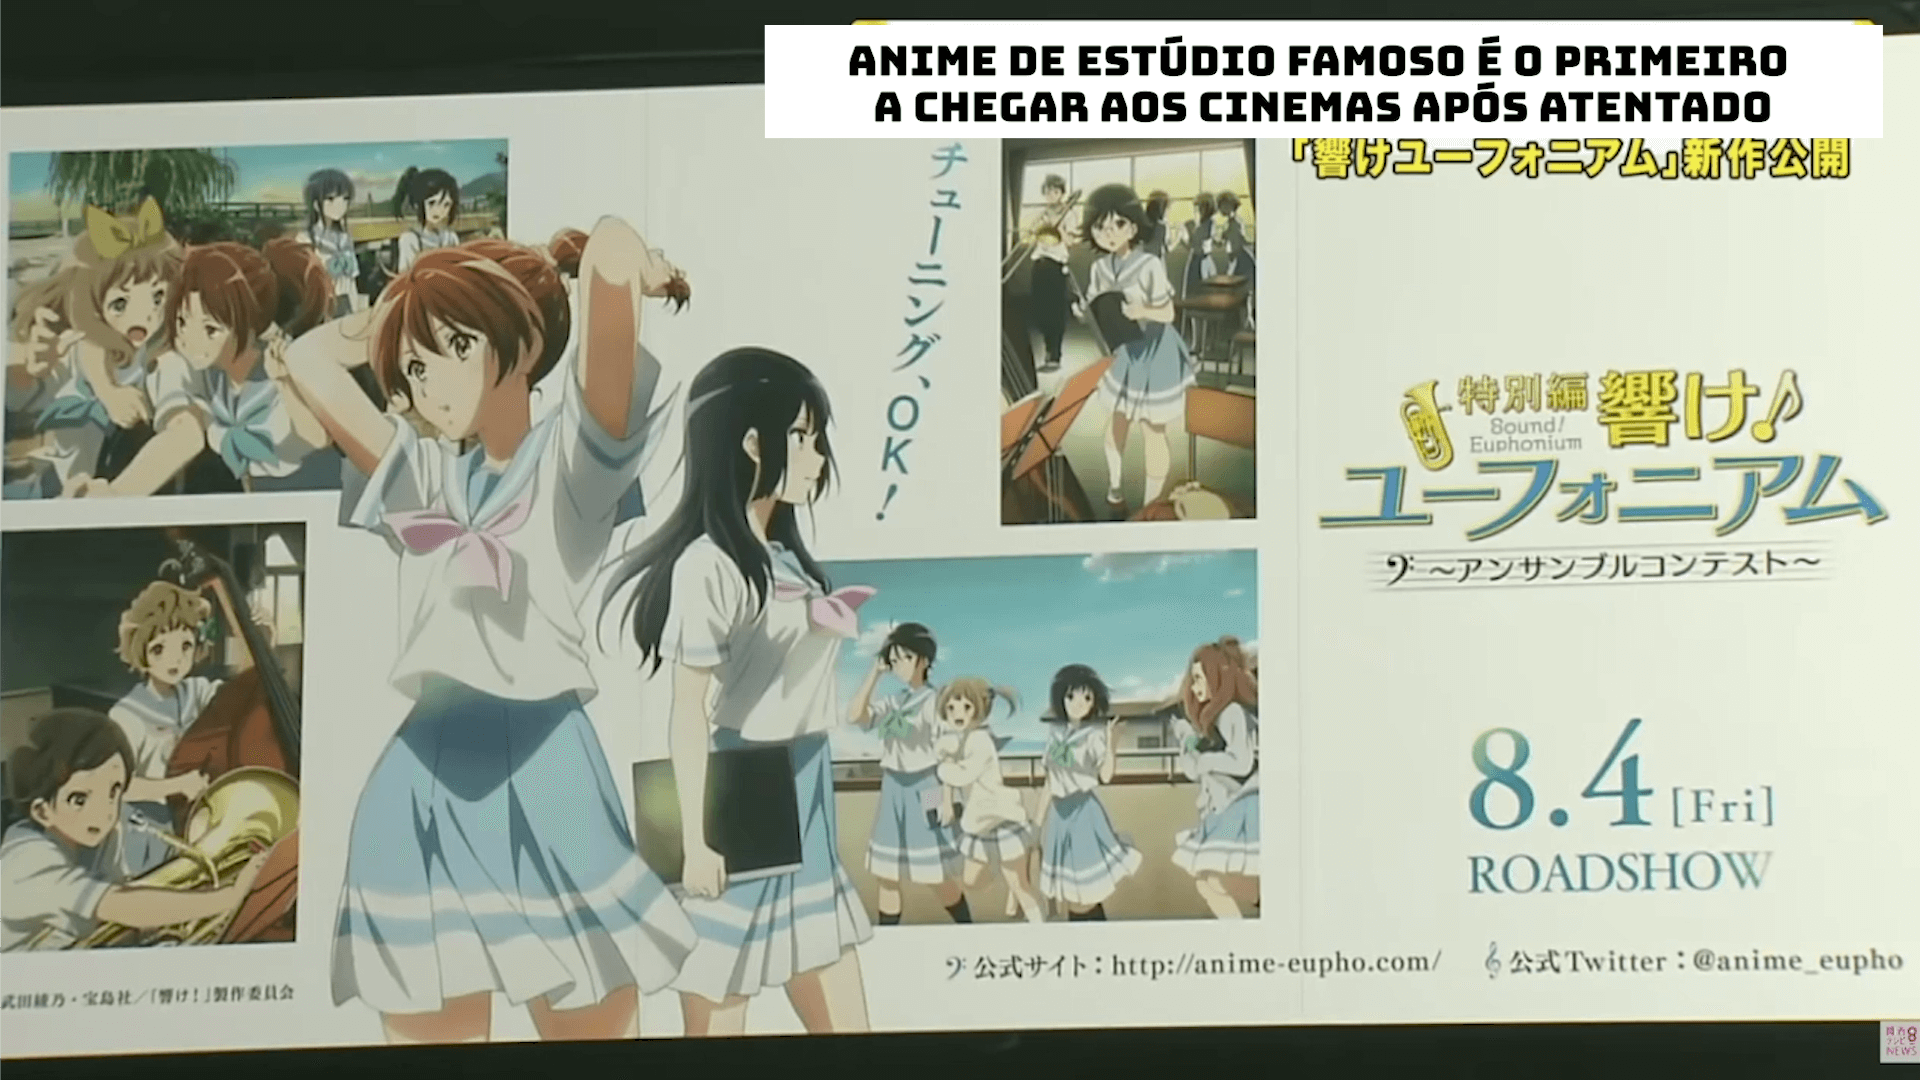 Anime de estúdio famoso é o primeiro a chegar aos cinemas após atentado no Japão